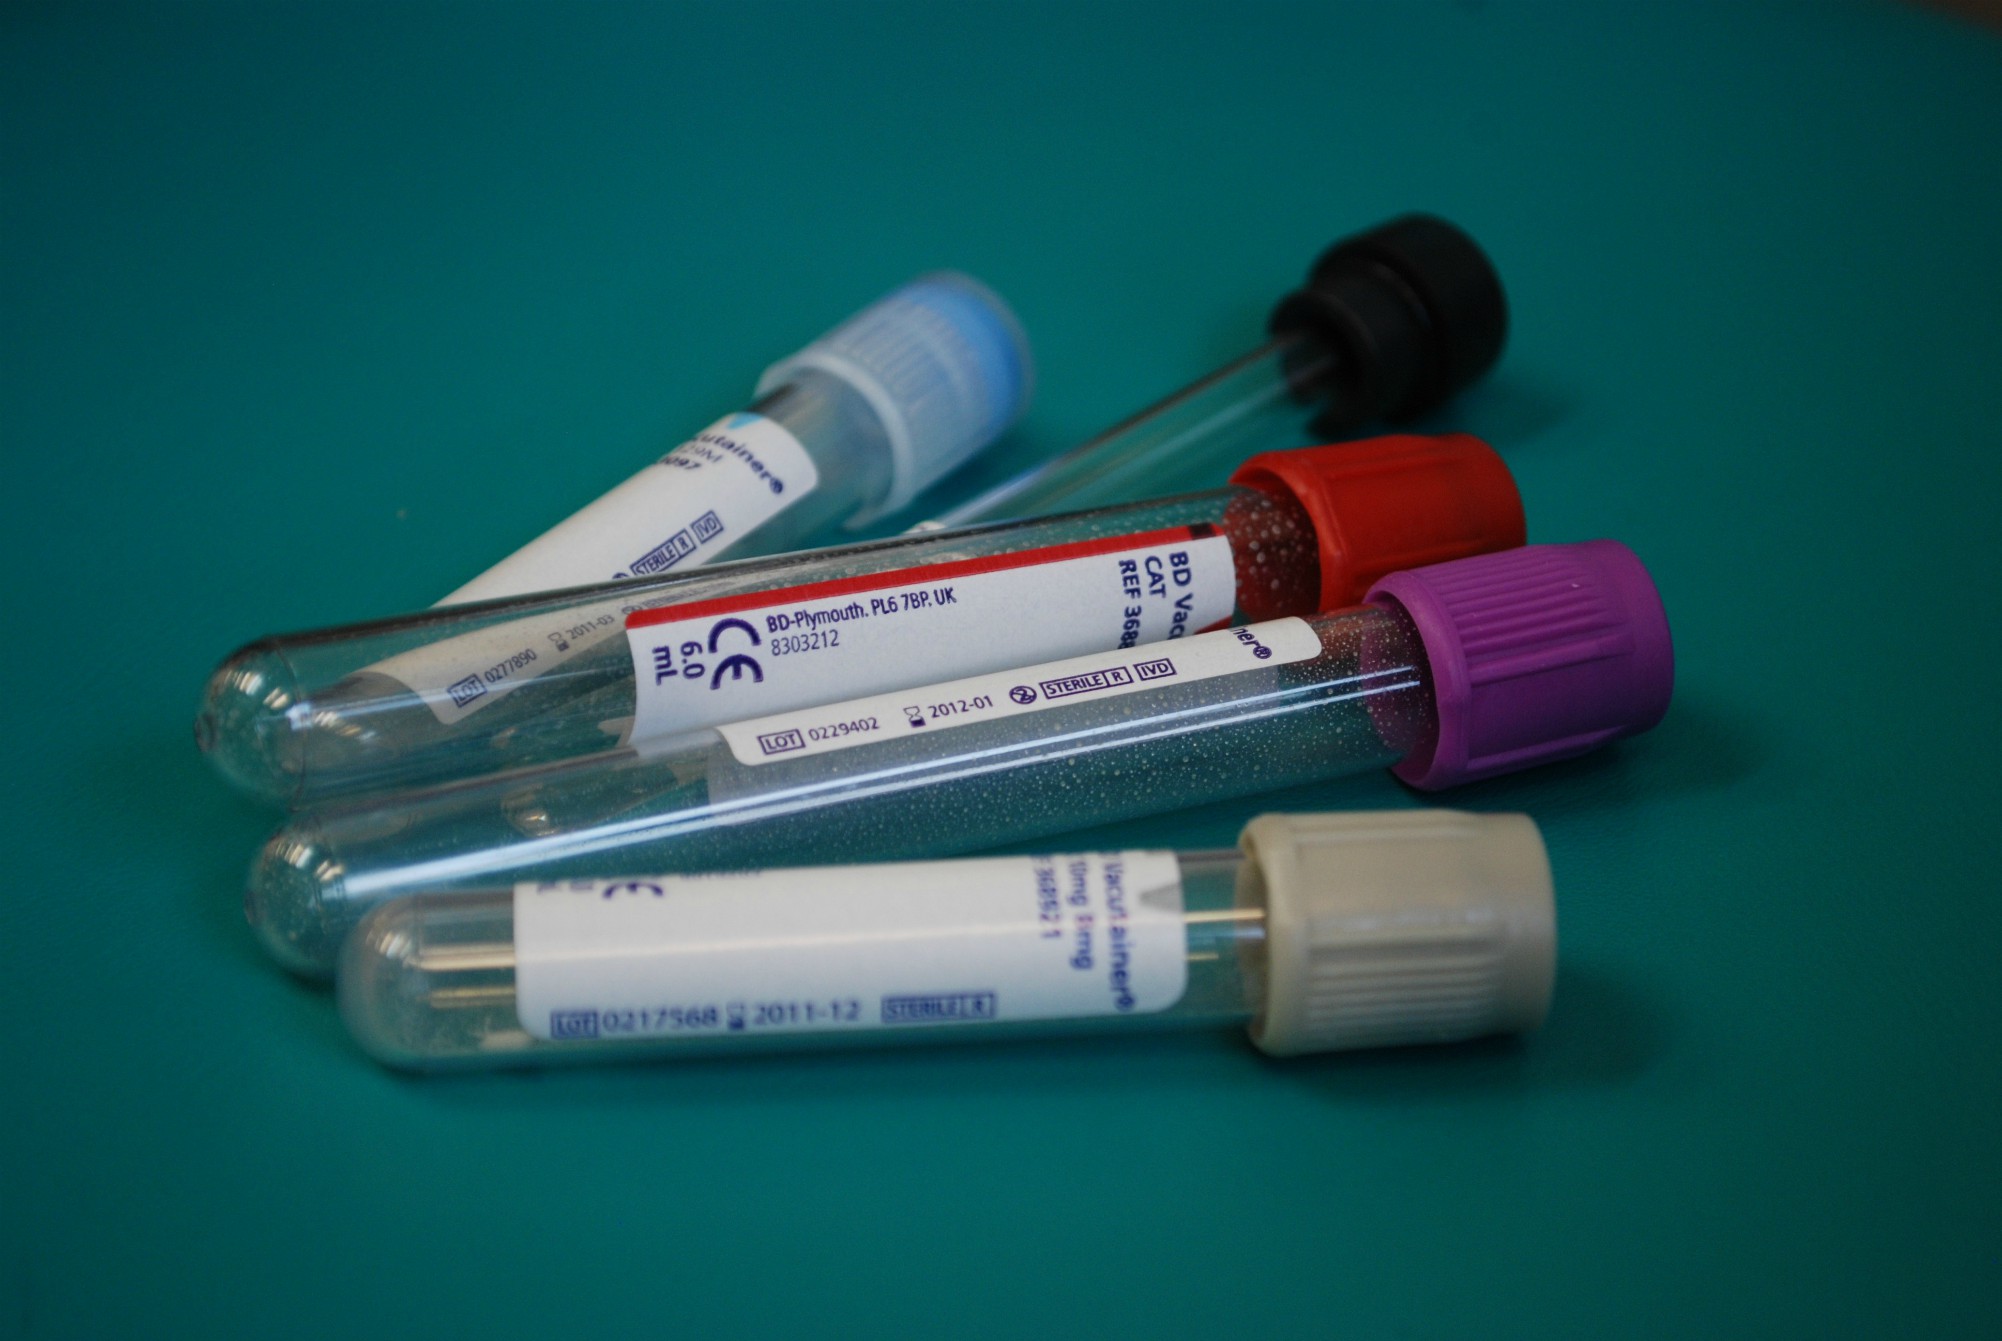 Test tubes for blood samples